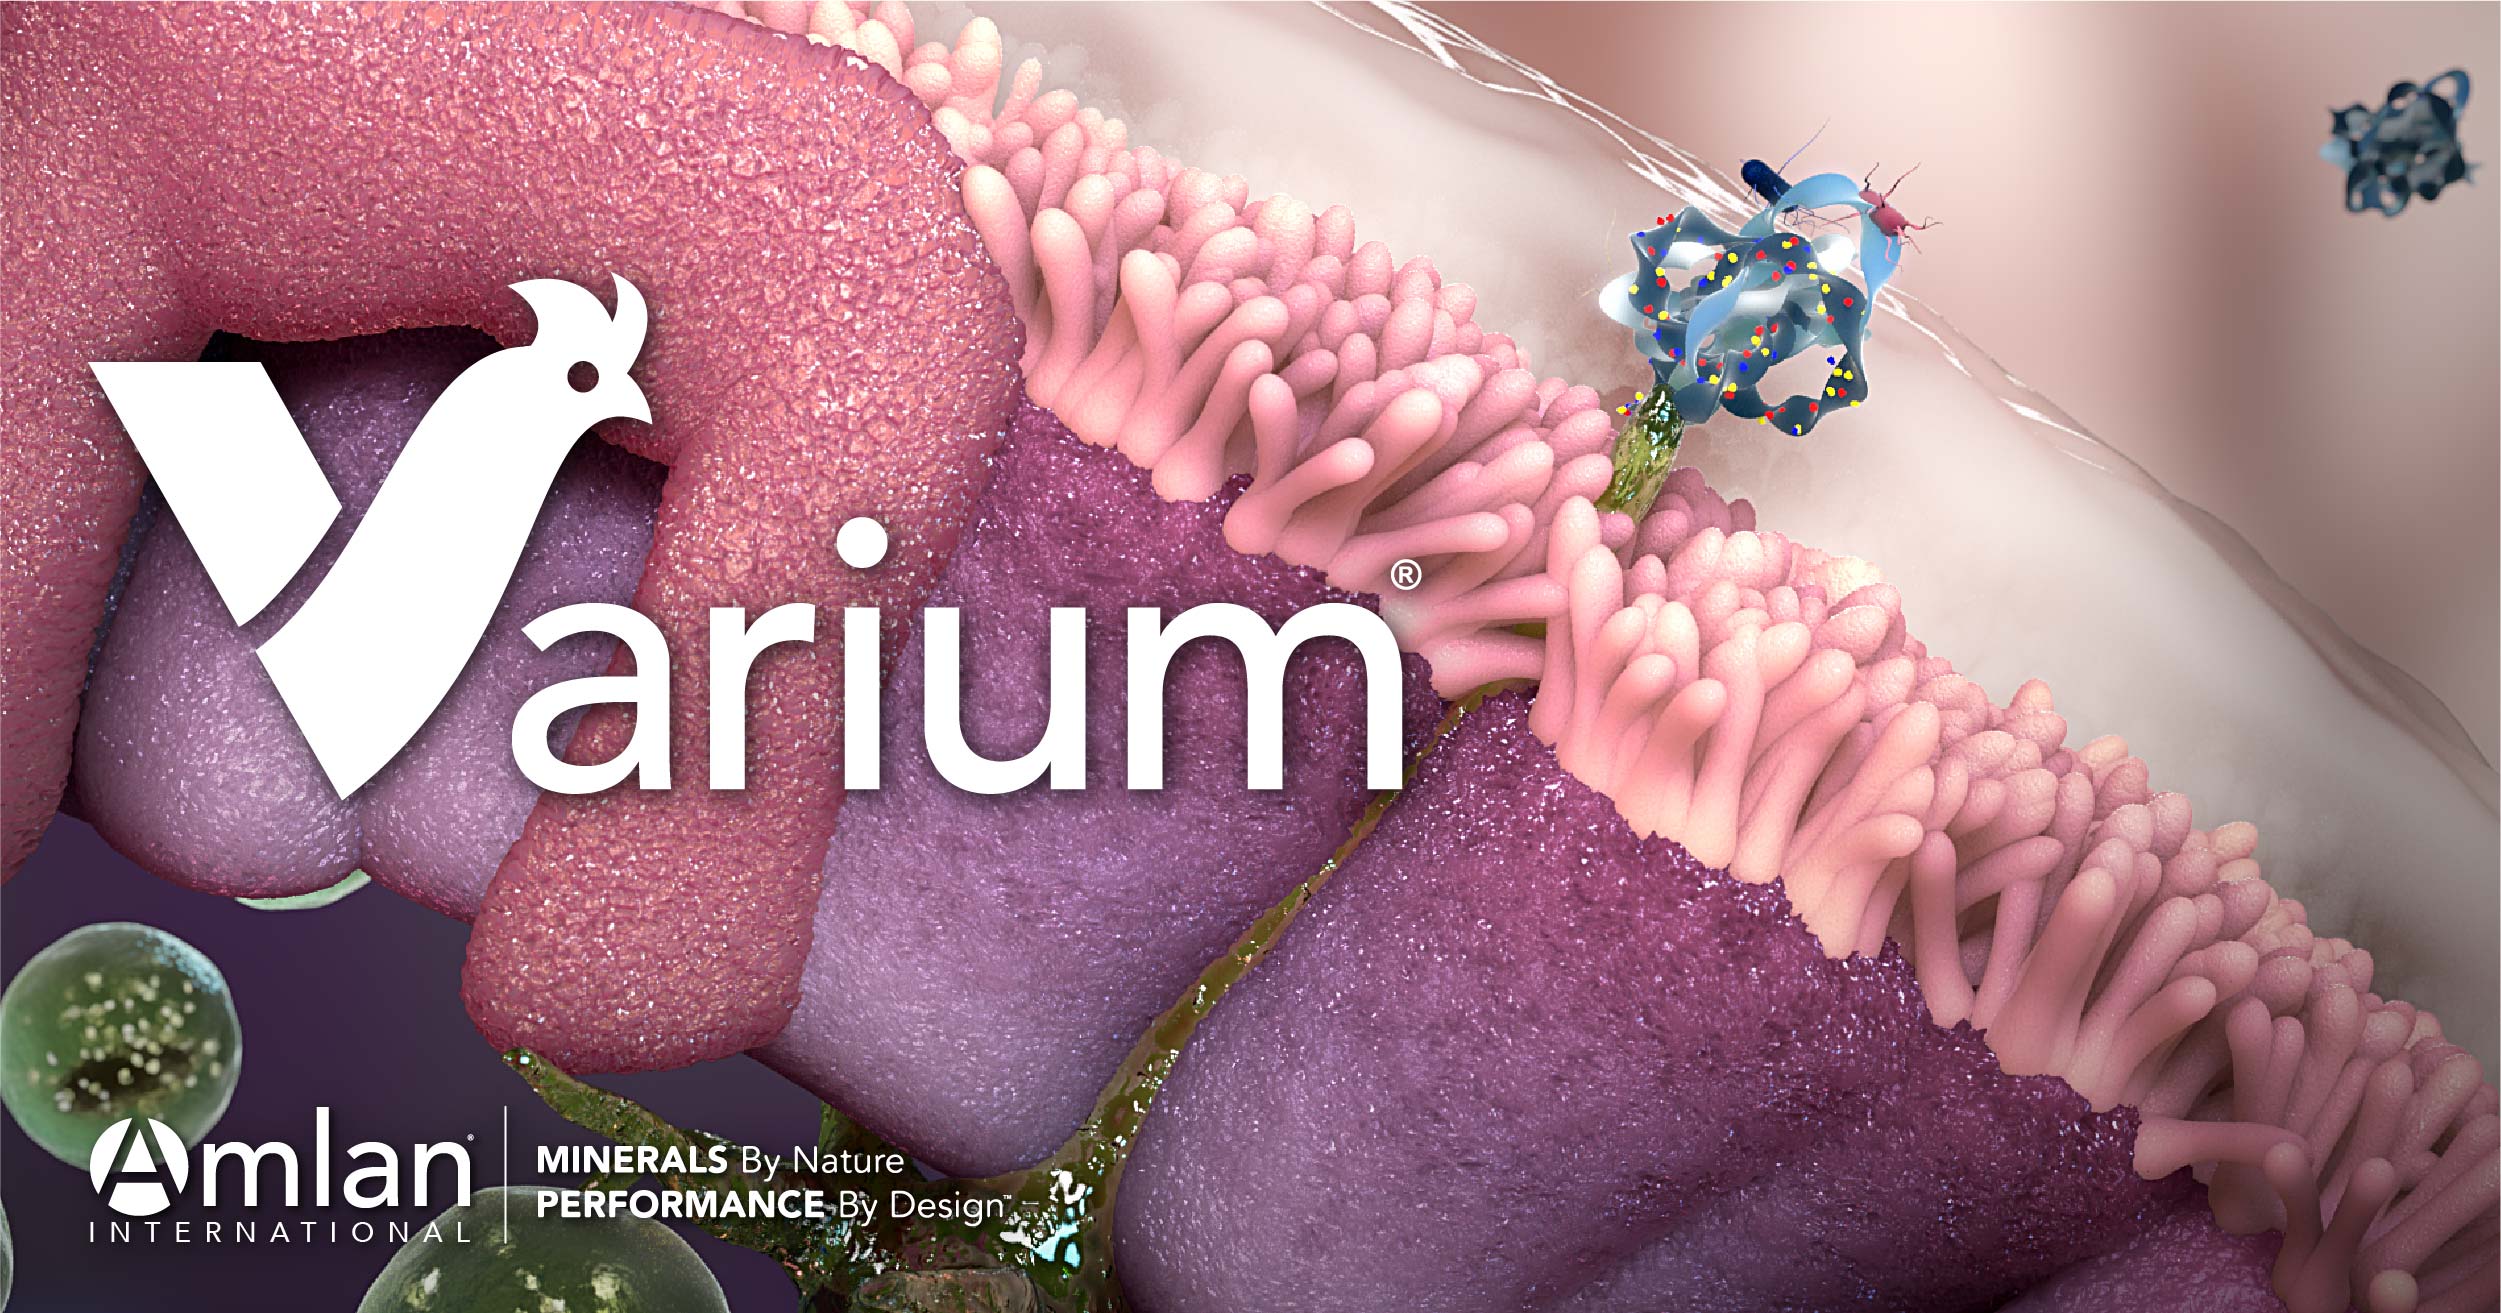 Blog de produtos Varium